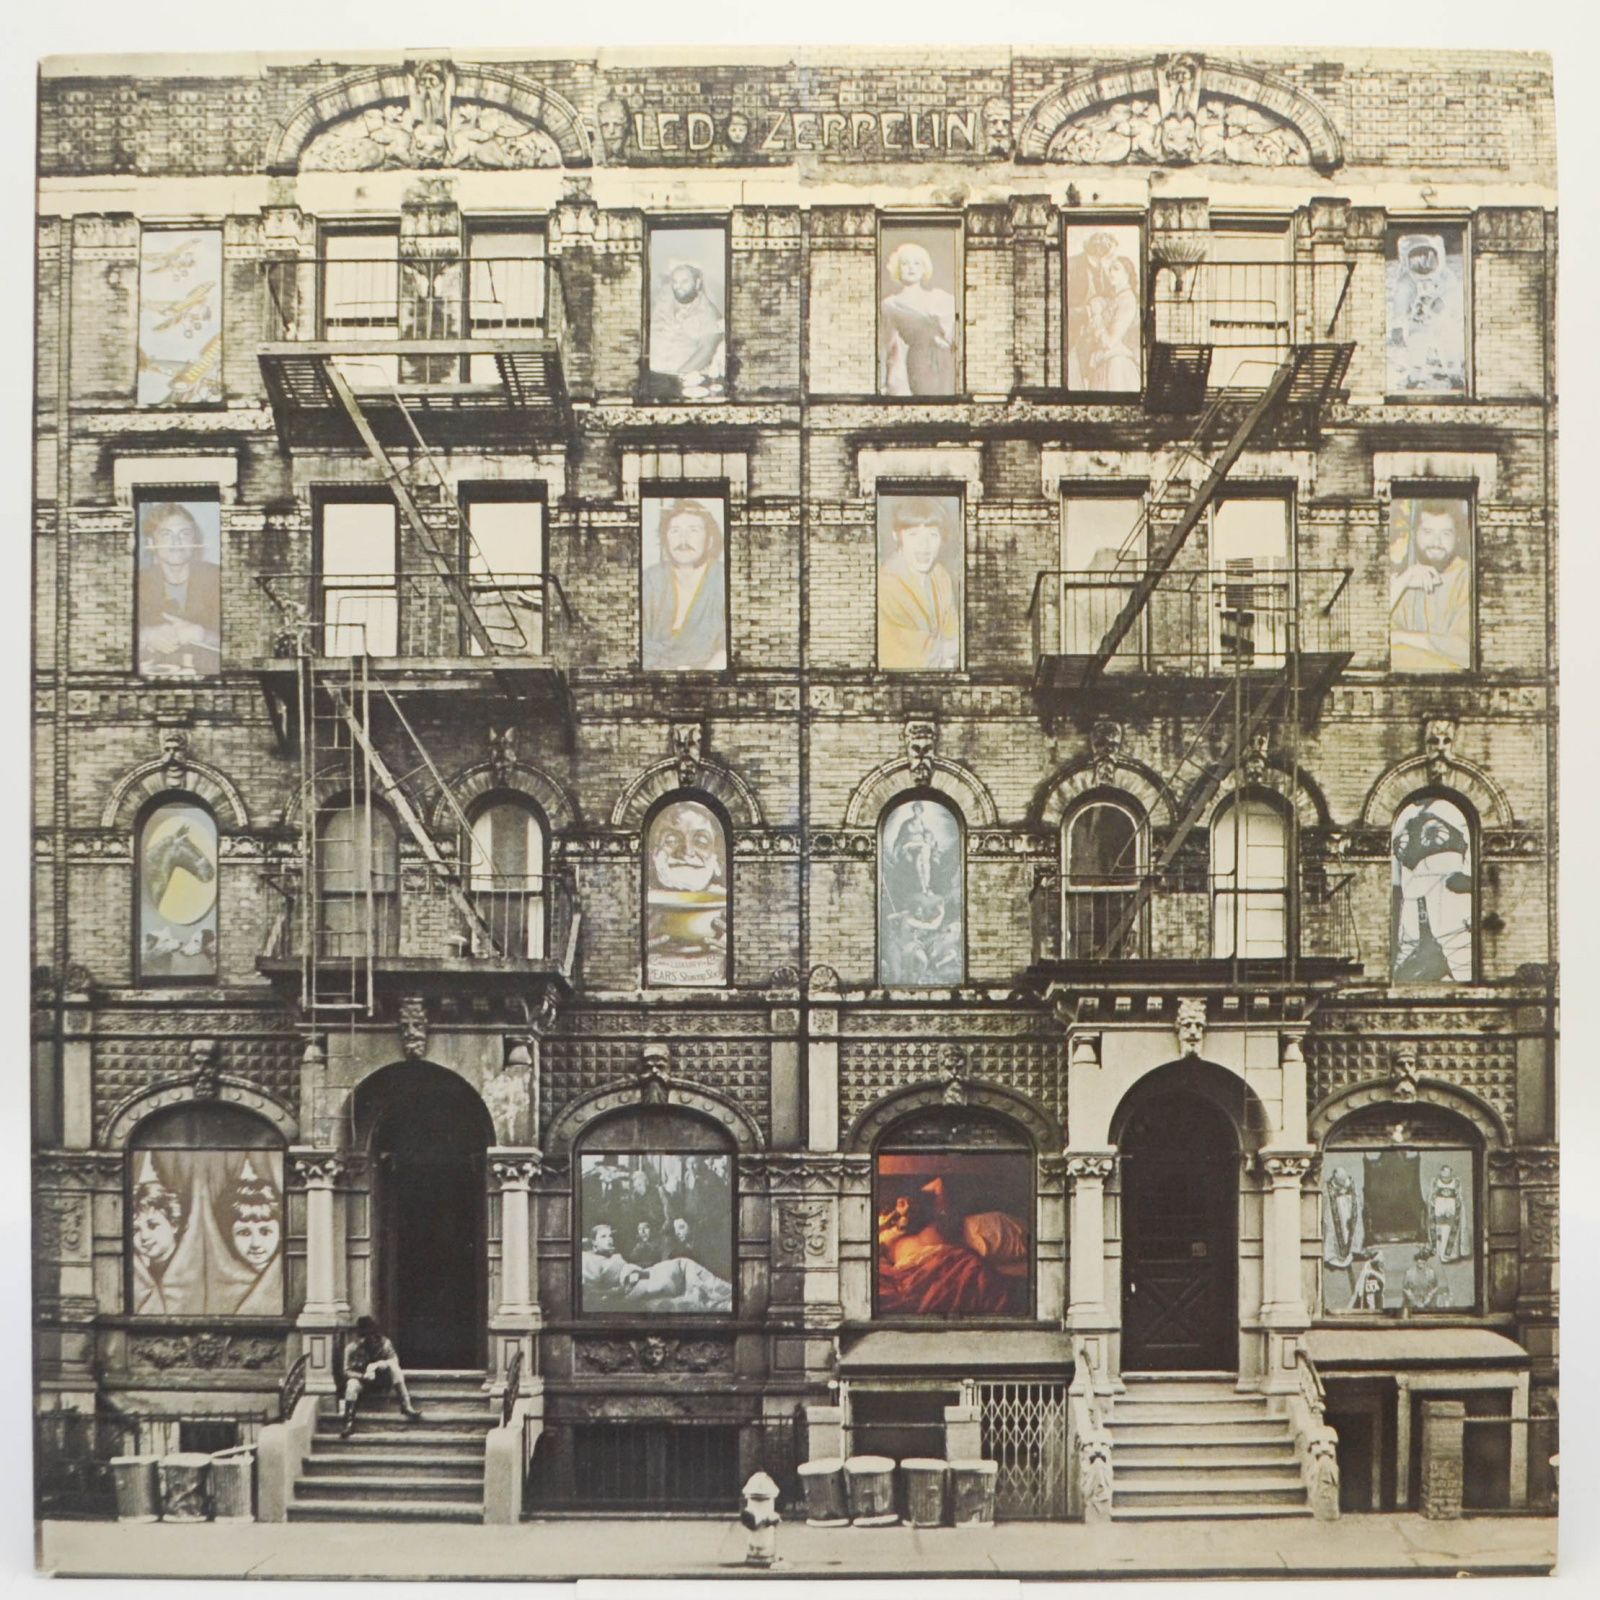 Led Zeppelin — Physical Graffiti (2LP), 1975